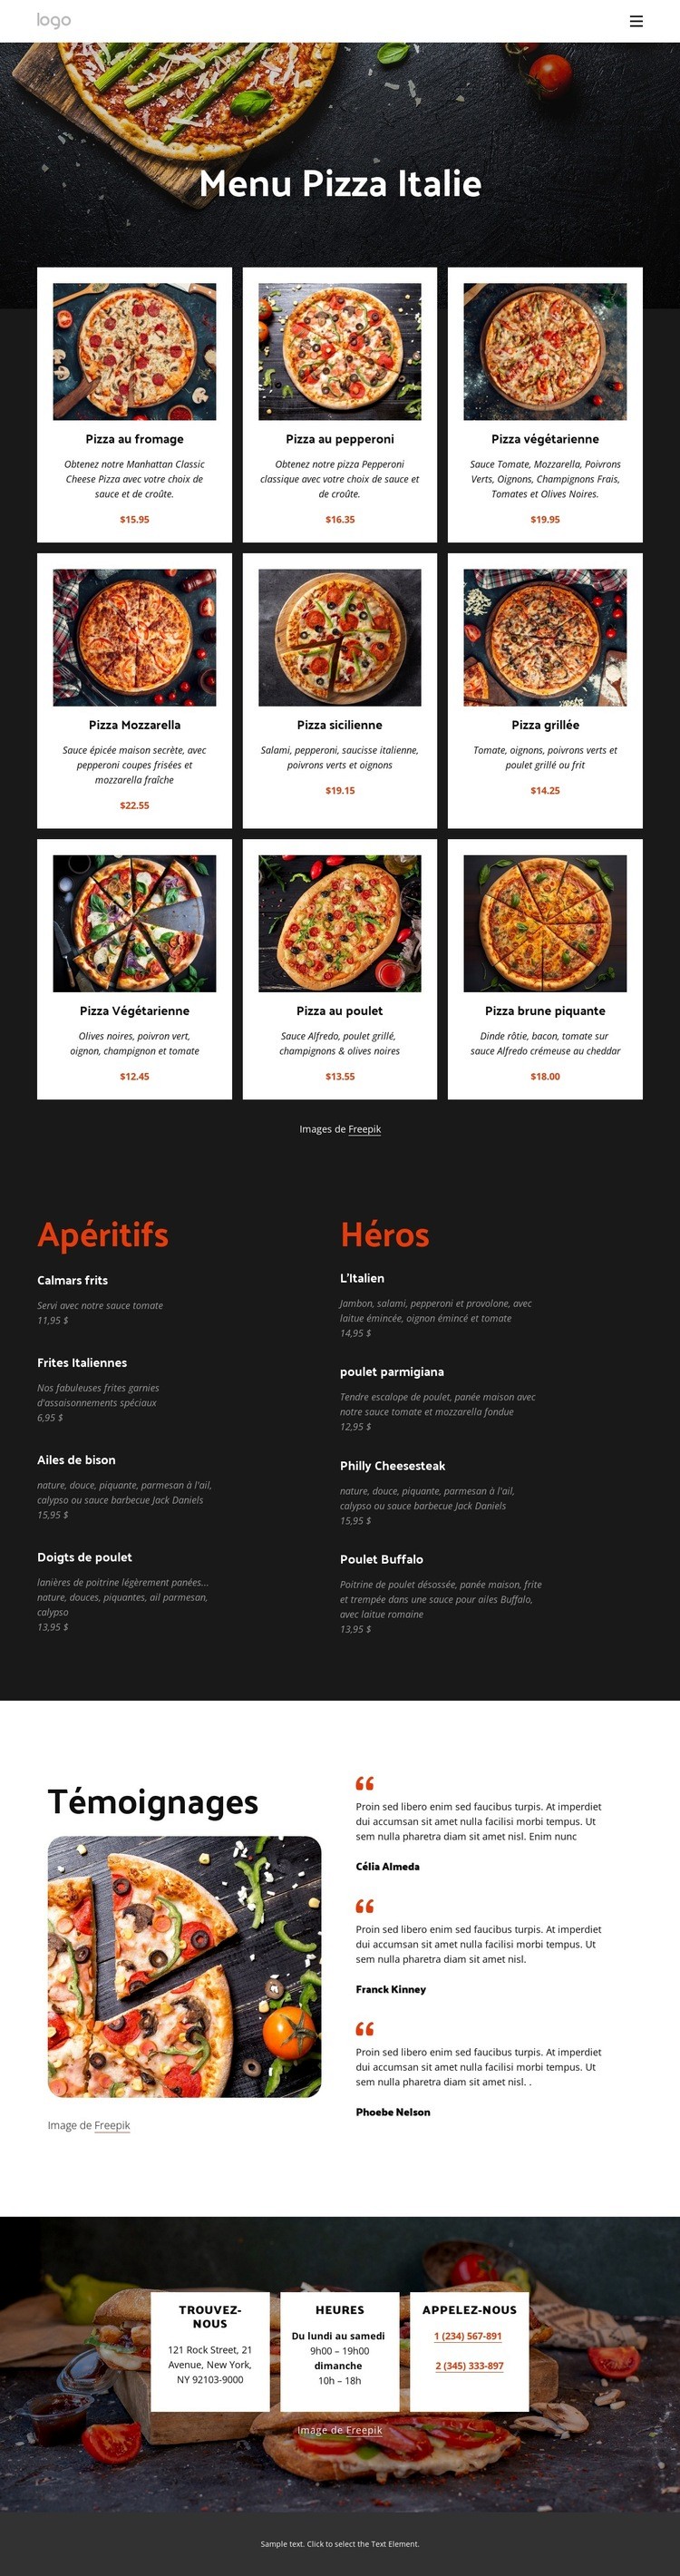 Notre carte des pizzas Modèle d'une page